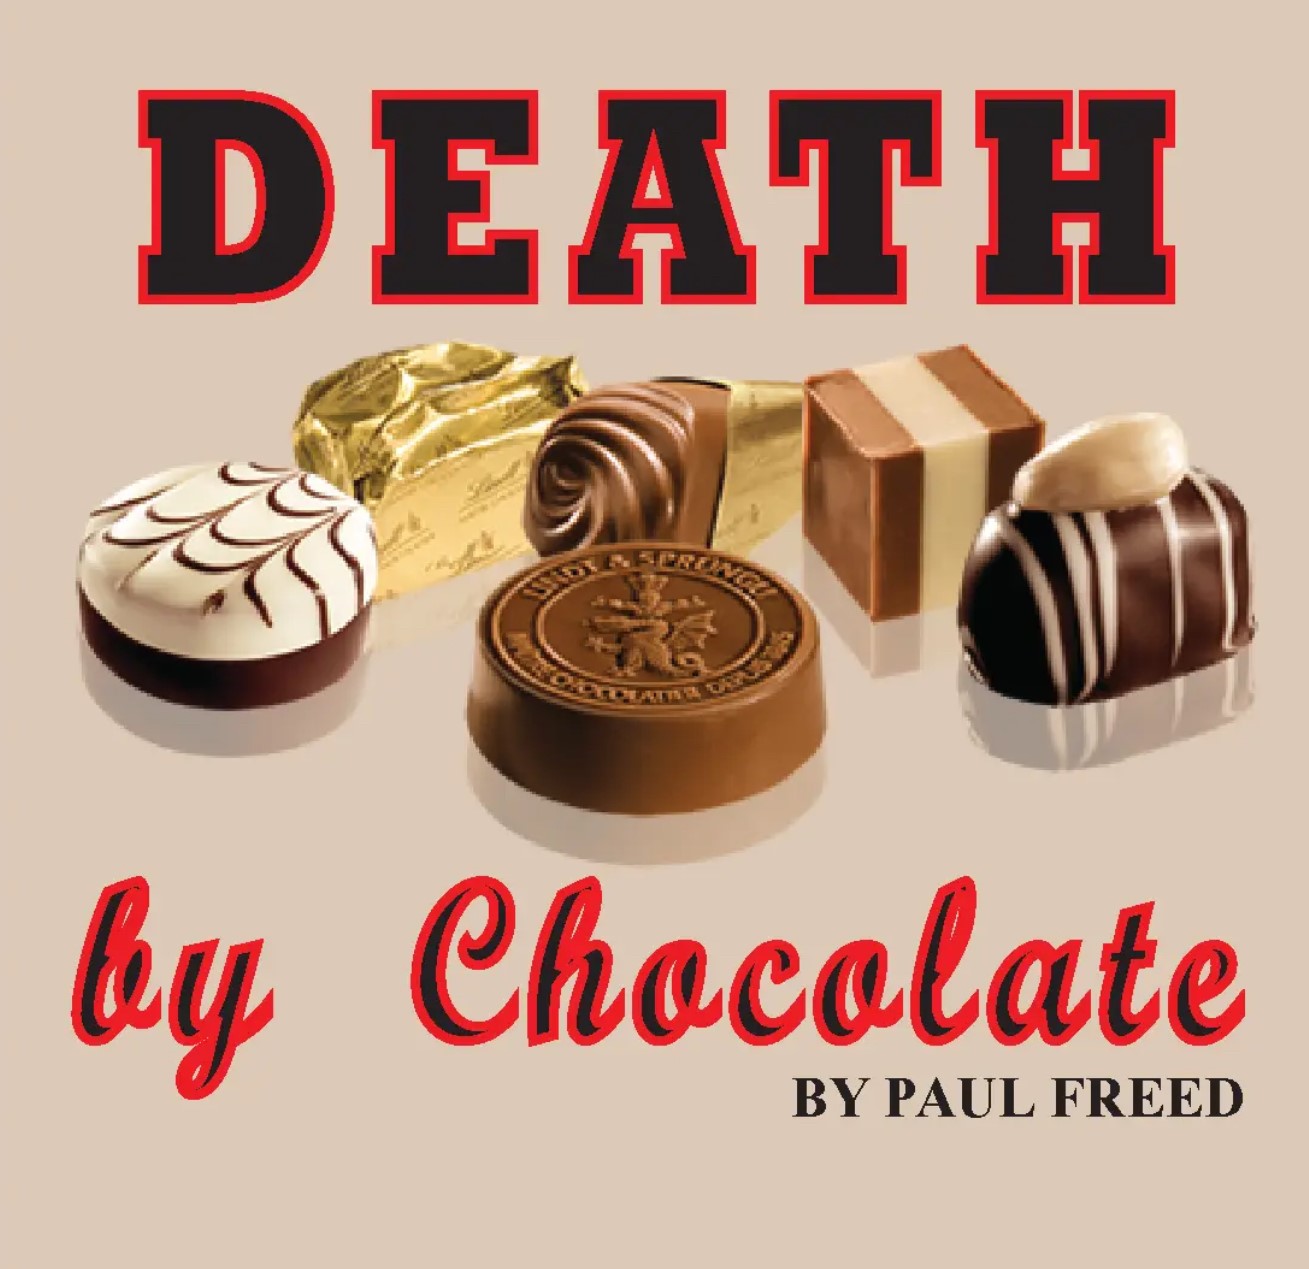 Death by Chocolate by Paul Freed on may. 10, 19:00@Area Community Theatre - Elegir asientoCompra entradas y obtén información entomahact.com 